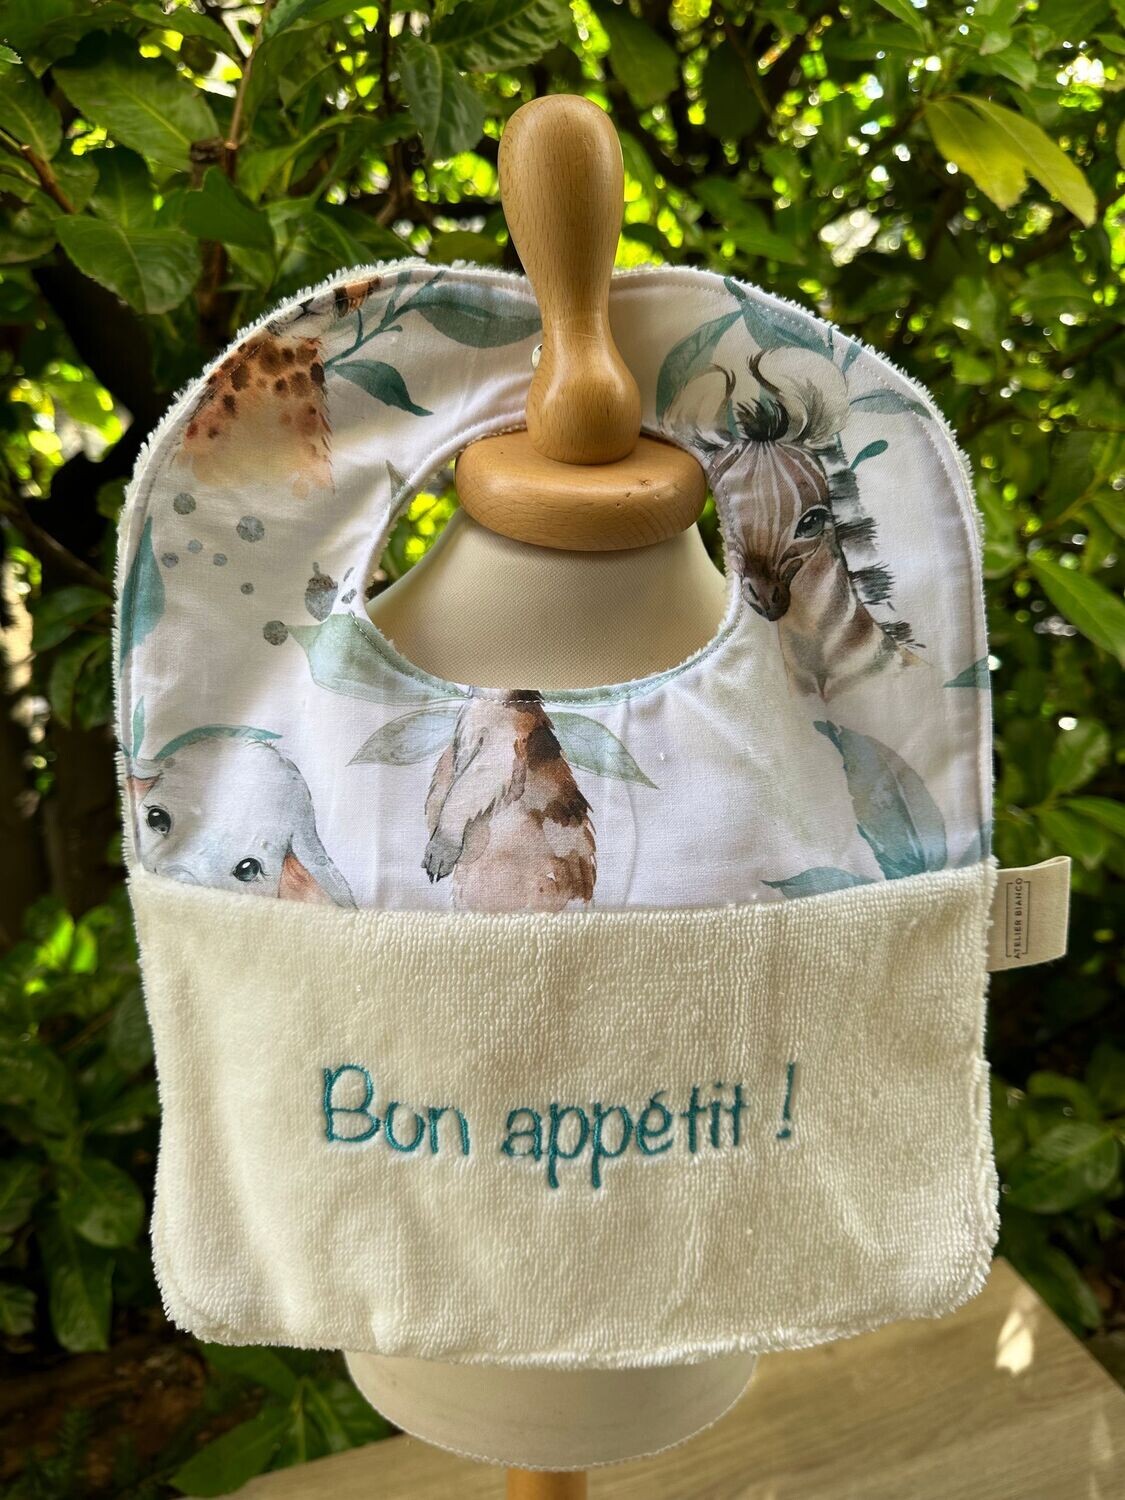 Bavoir "Bon appétit !"